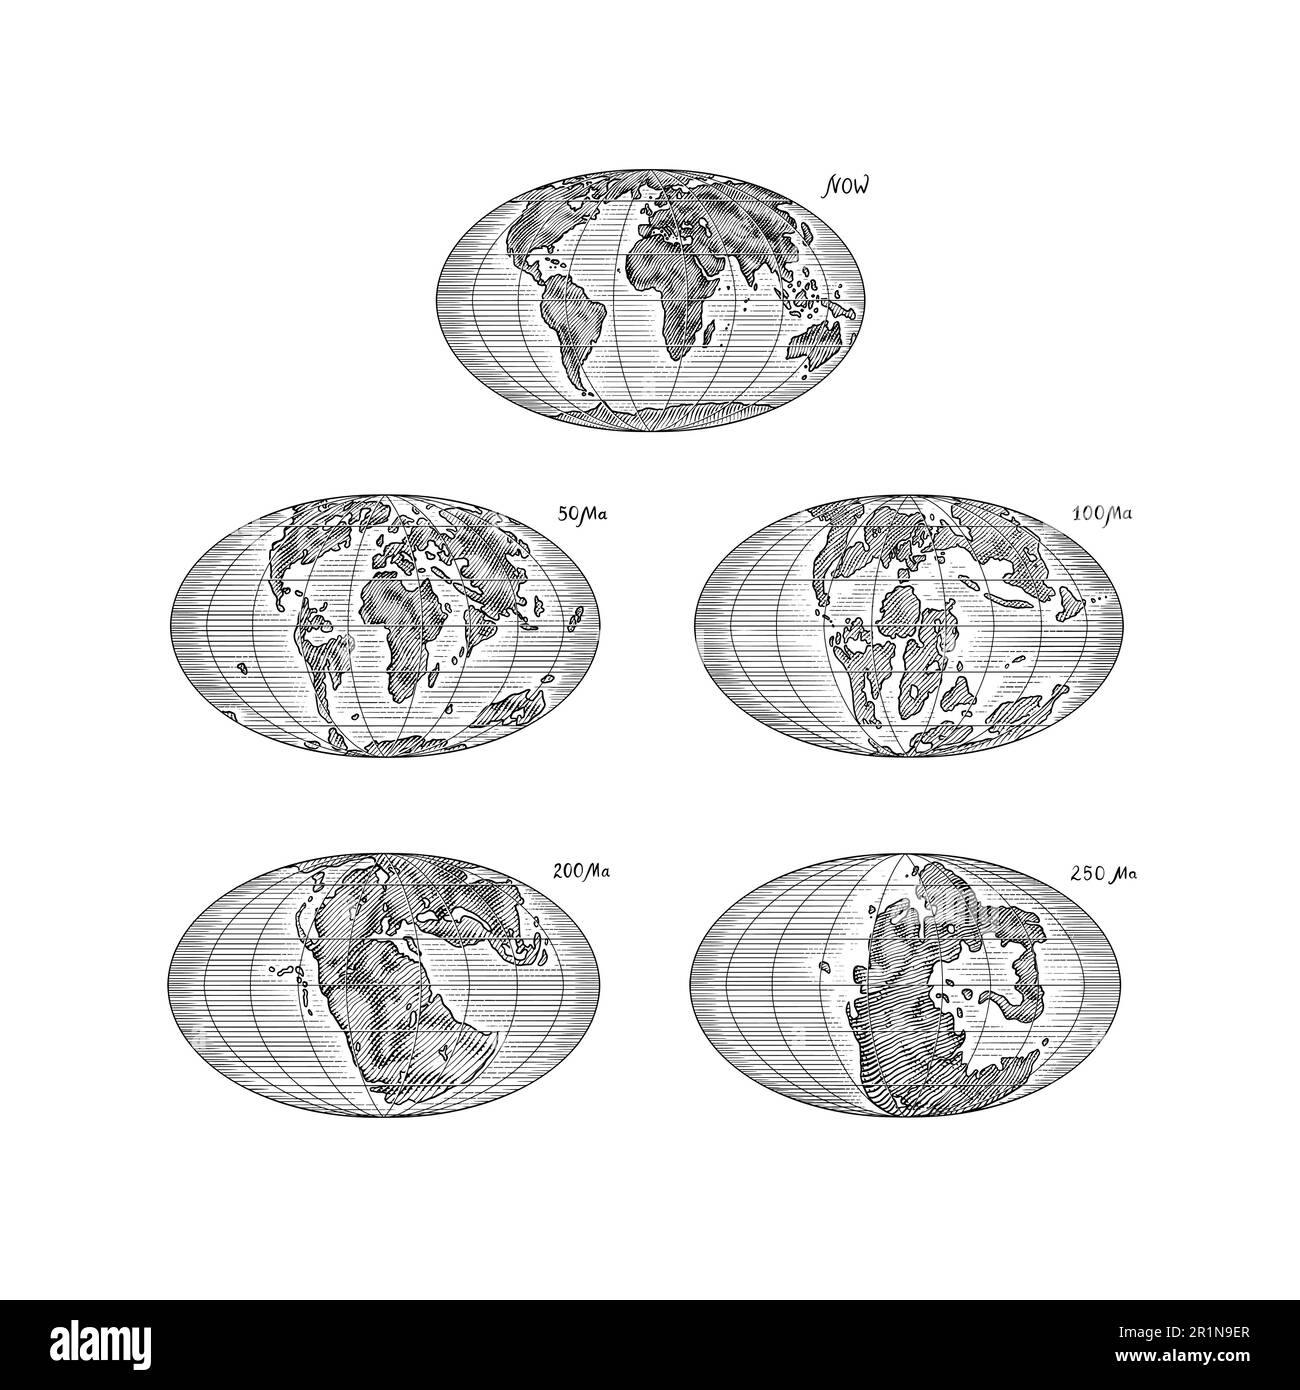 Plattentektonik auf dem Planeten Erde. Pangaea. Kontinentale Drift. Superkontinent bei 250 Ma. Die Ära der Dinosaurier. Jurassezeit. Mesozoisch. Handgezeichnet Stock Vektor